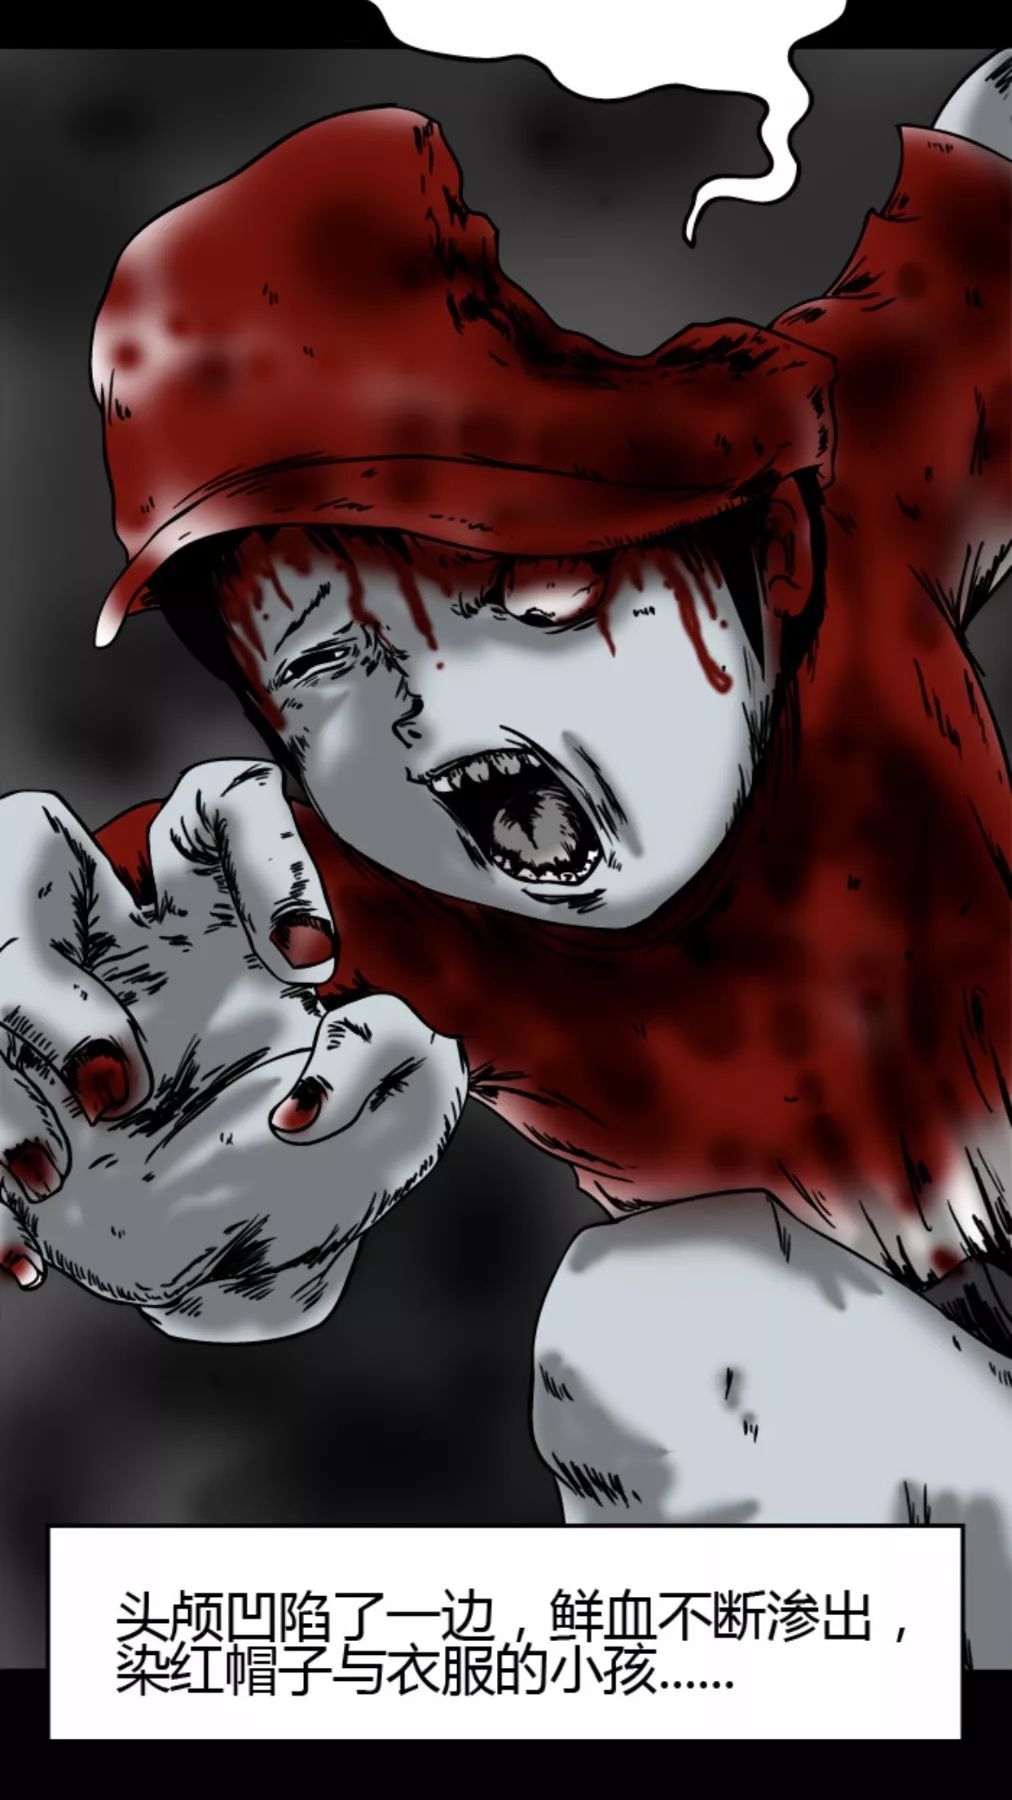 【靈異漫畫】《跑步》染紅帽的小男孩 靈異 第7張